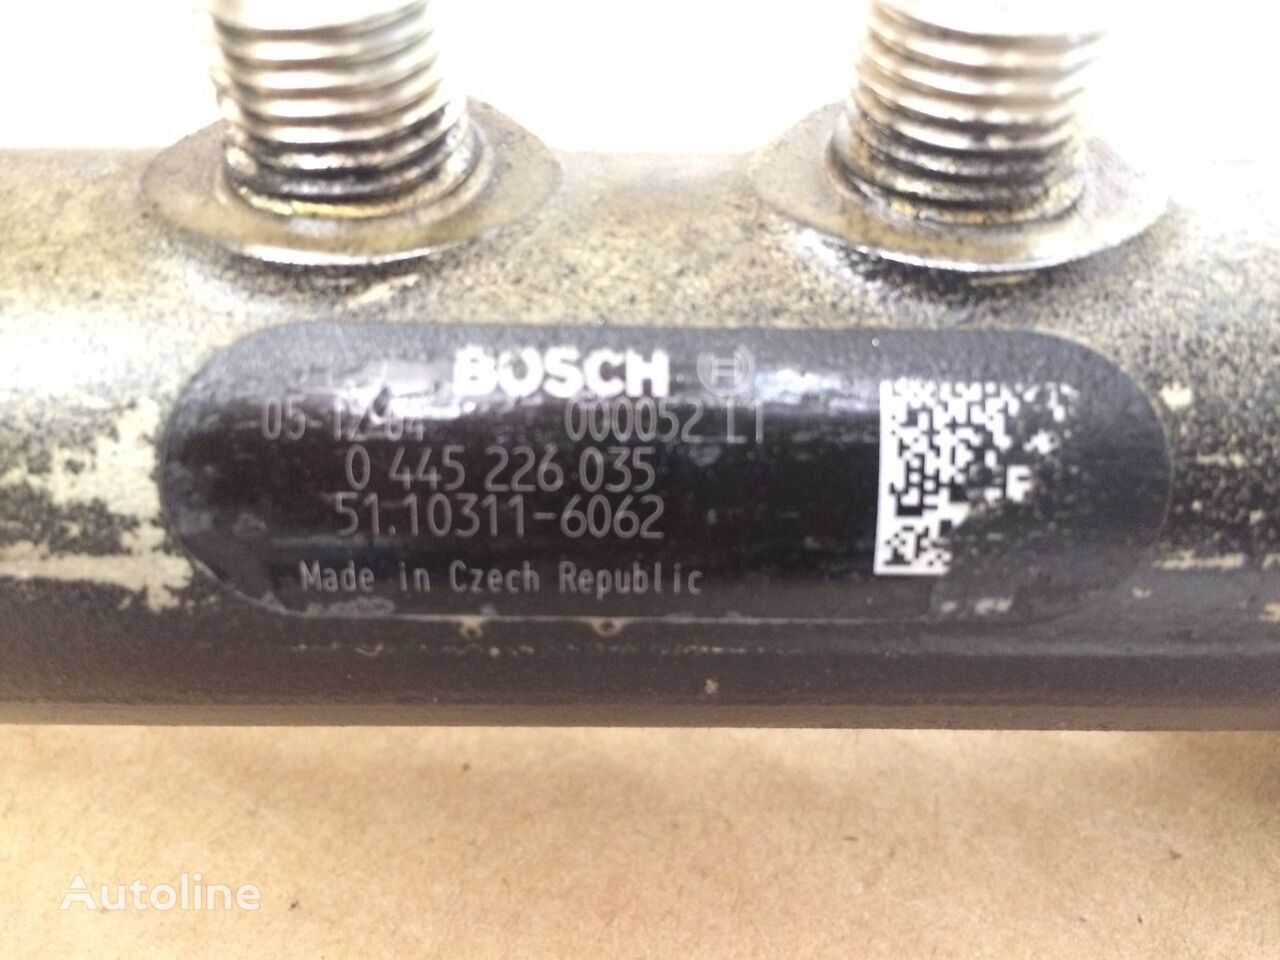 Injector for Truck Bosch - TUBO PRESSIONE COMMON RAIL BOSCH   MAN: picture 6